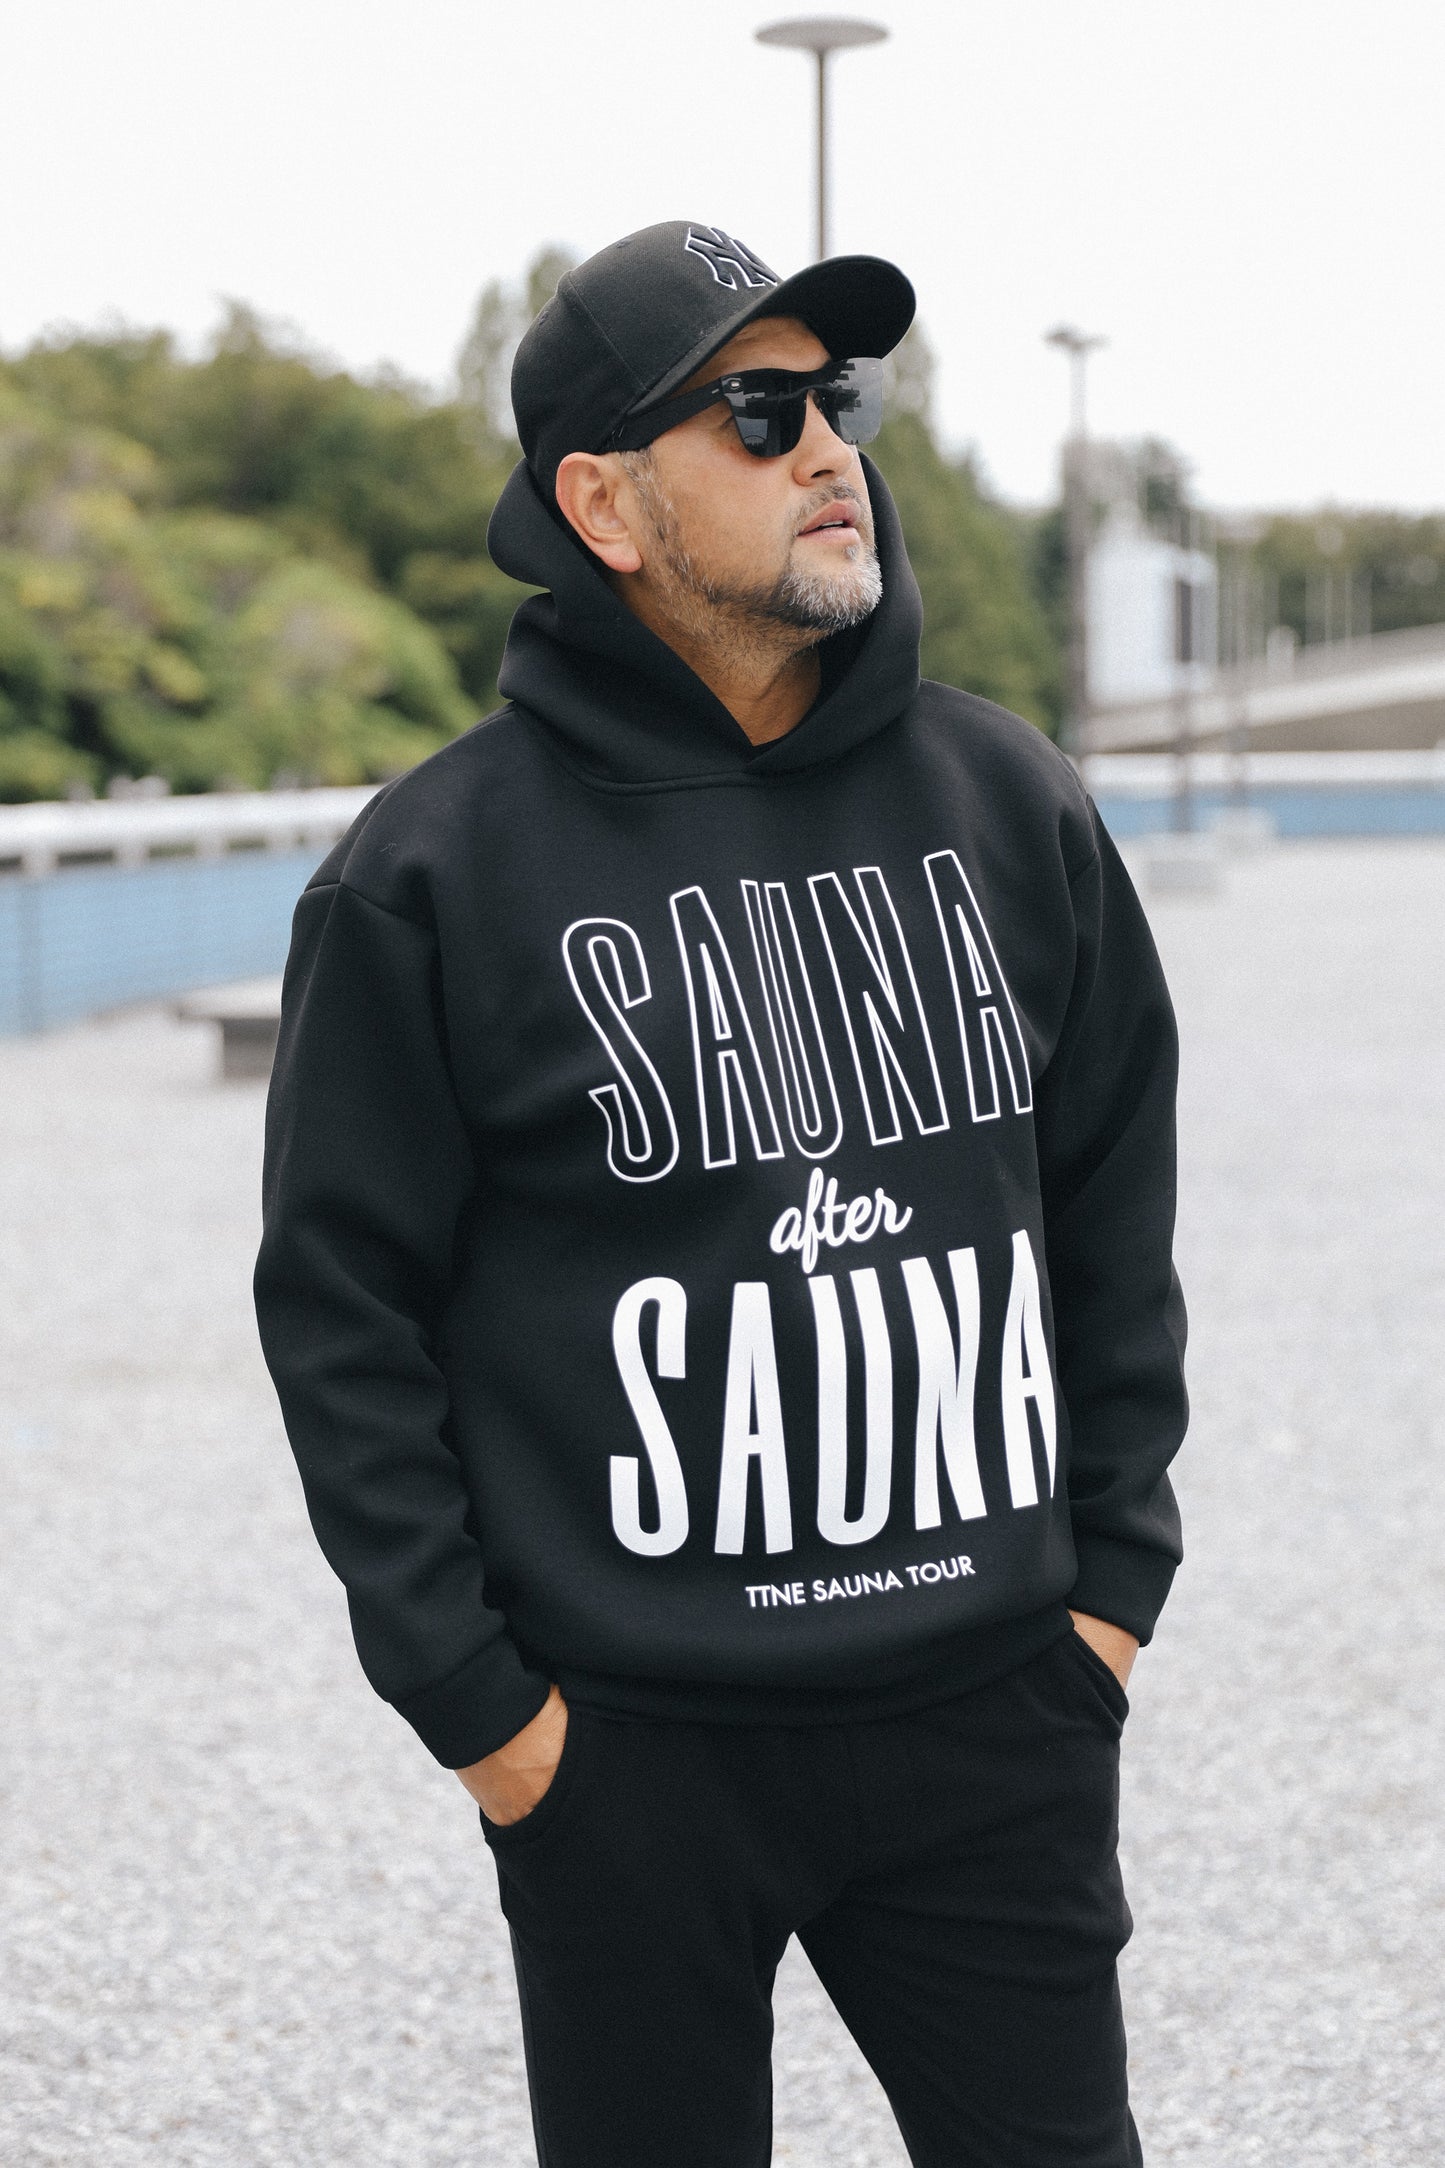 SAUNA after SAUNA Logo Hooded Sweatshirts - Black